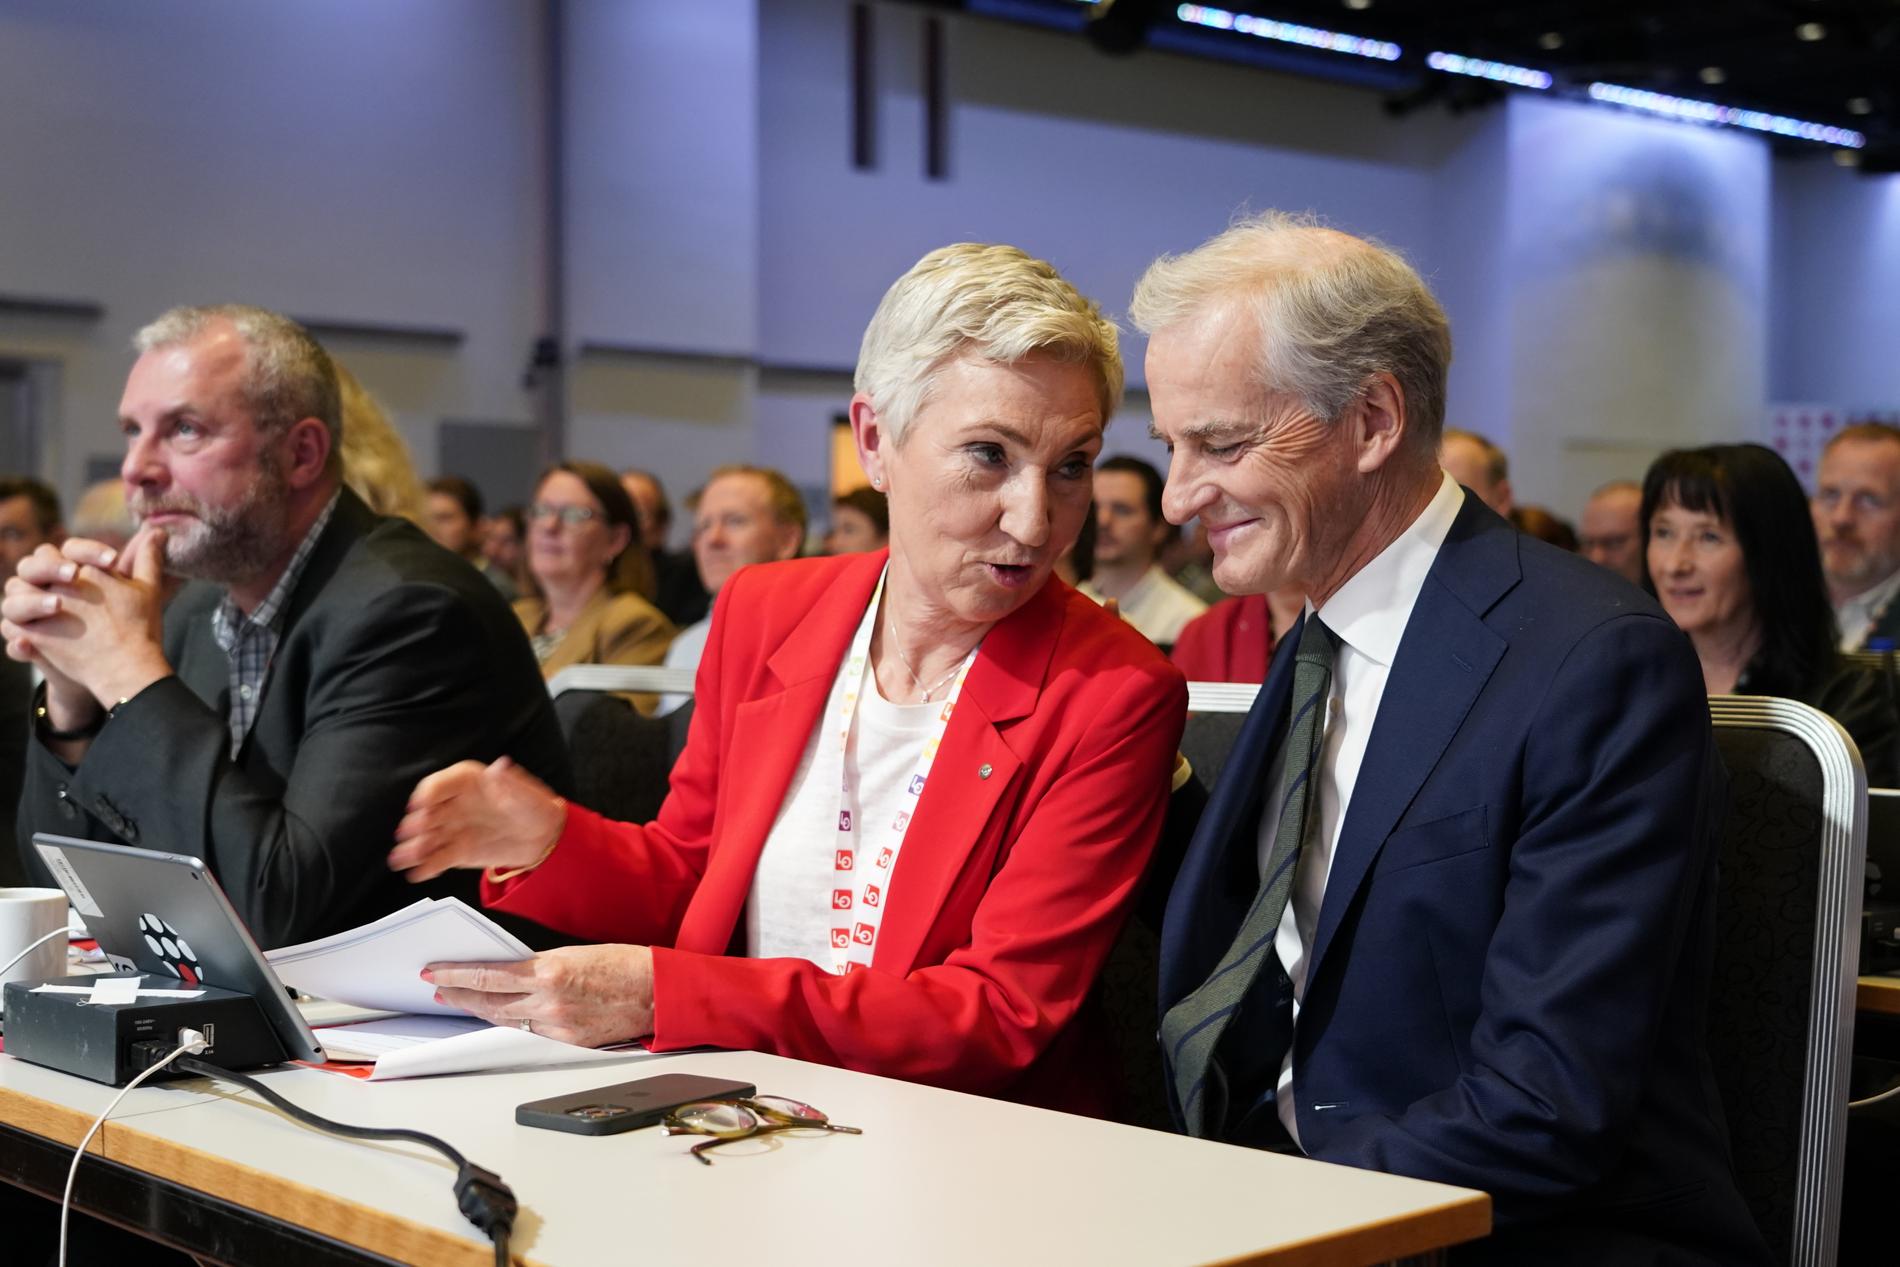 Statsminister Jonas Gahr Støre (Arbeiderpartiet) i samspråk med LO:s ordförande Peggy Hessen Følsvik på måndagens LO-kongress. Där uppmanade hon honom att släppa in vänsterpartiet SV i regeringen.